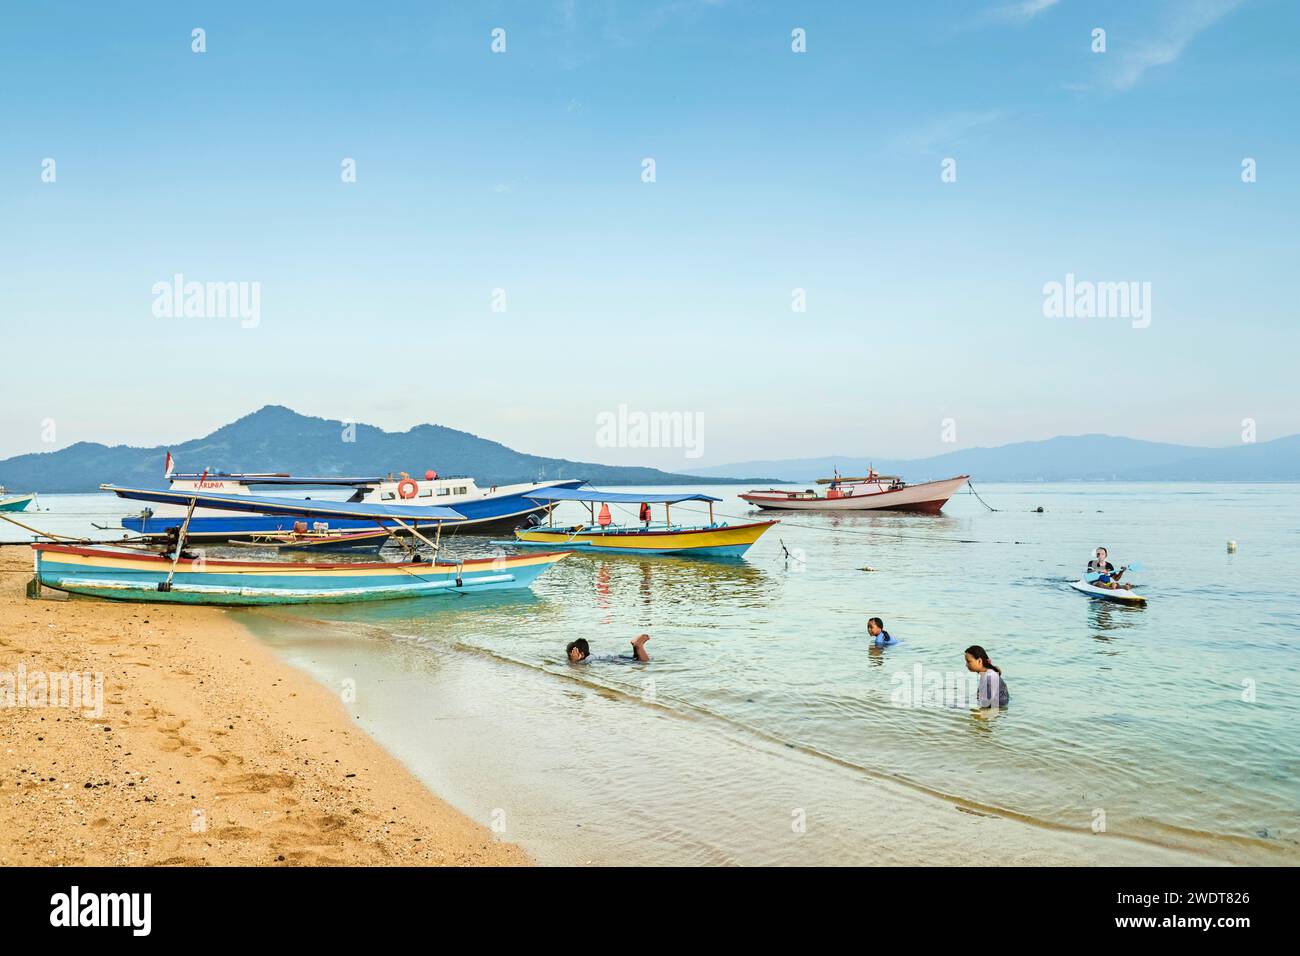 Einheimische schwimmen am Stadtstrand mit dem Festland dahinter auf dieser von Korallen gesäumten Urlaubsinsel Bunaken Island, Sulawesi, Indonesien, Südostasien, Asien Stockfoto